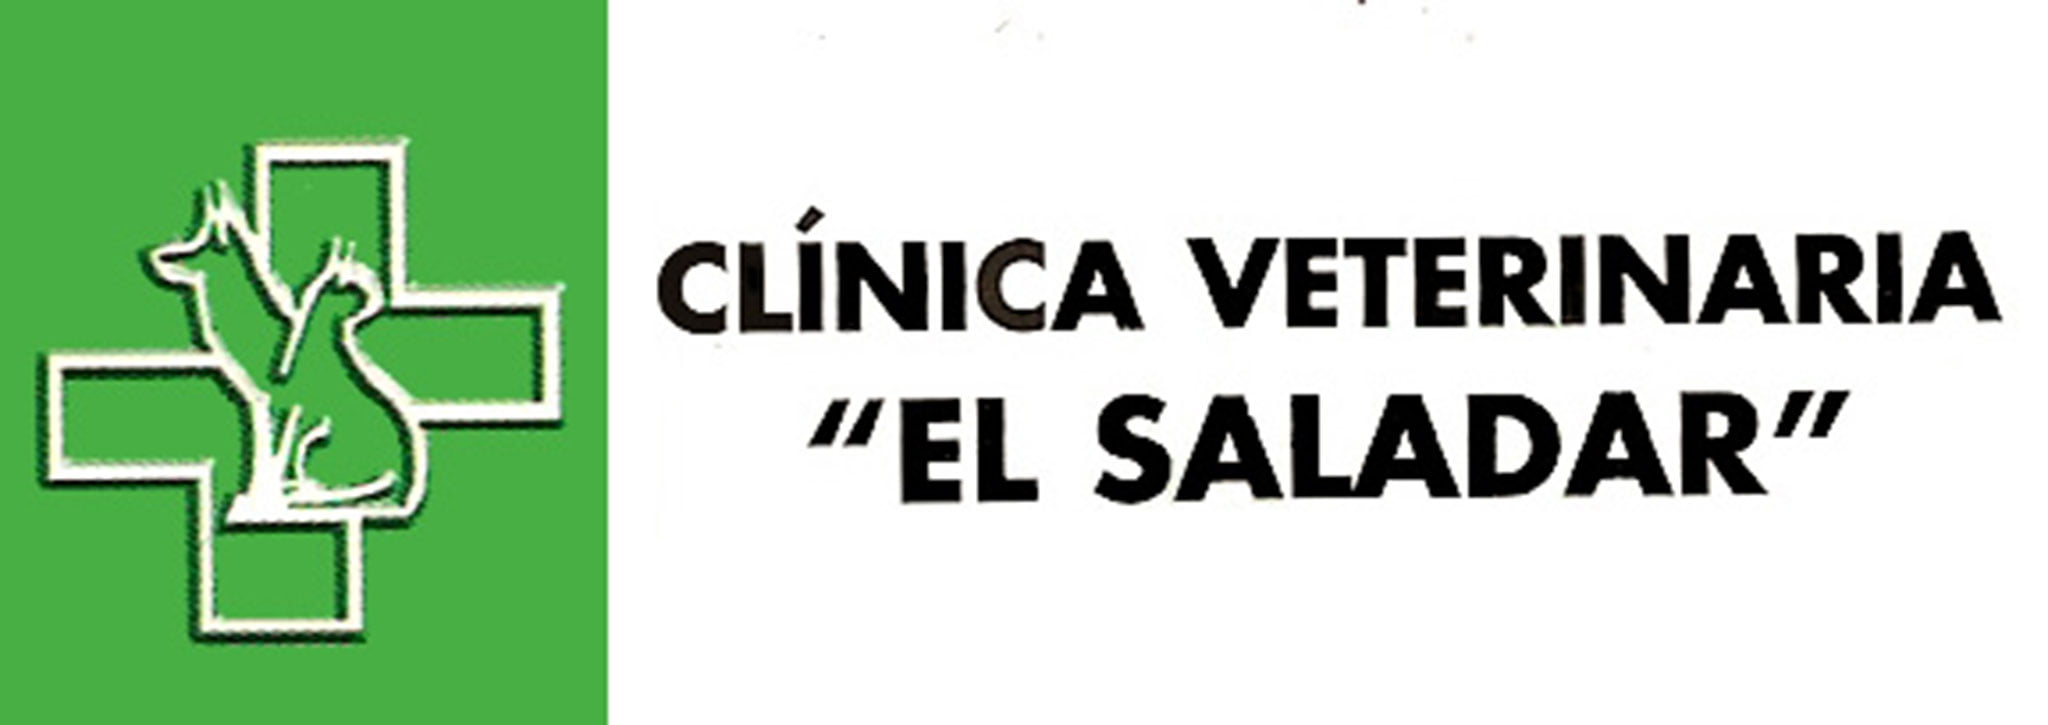 Logotipo de Clínica Veterinaria El Saladar